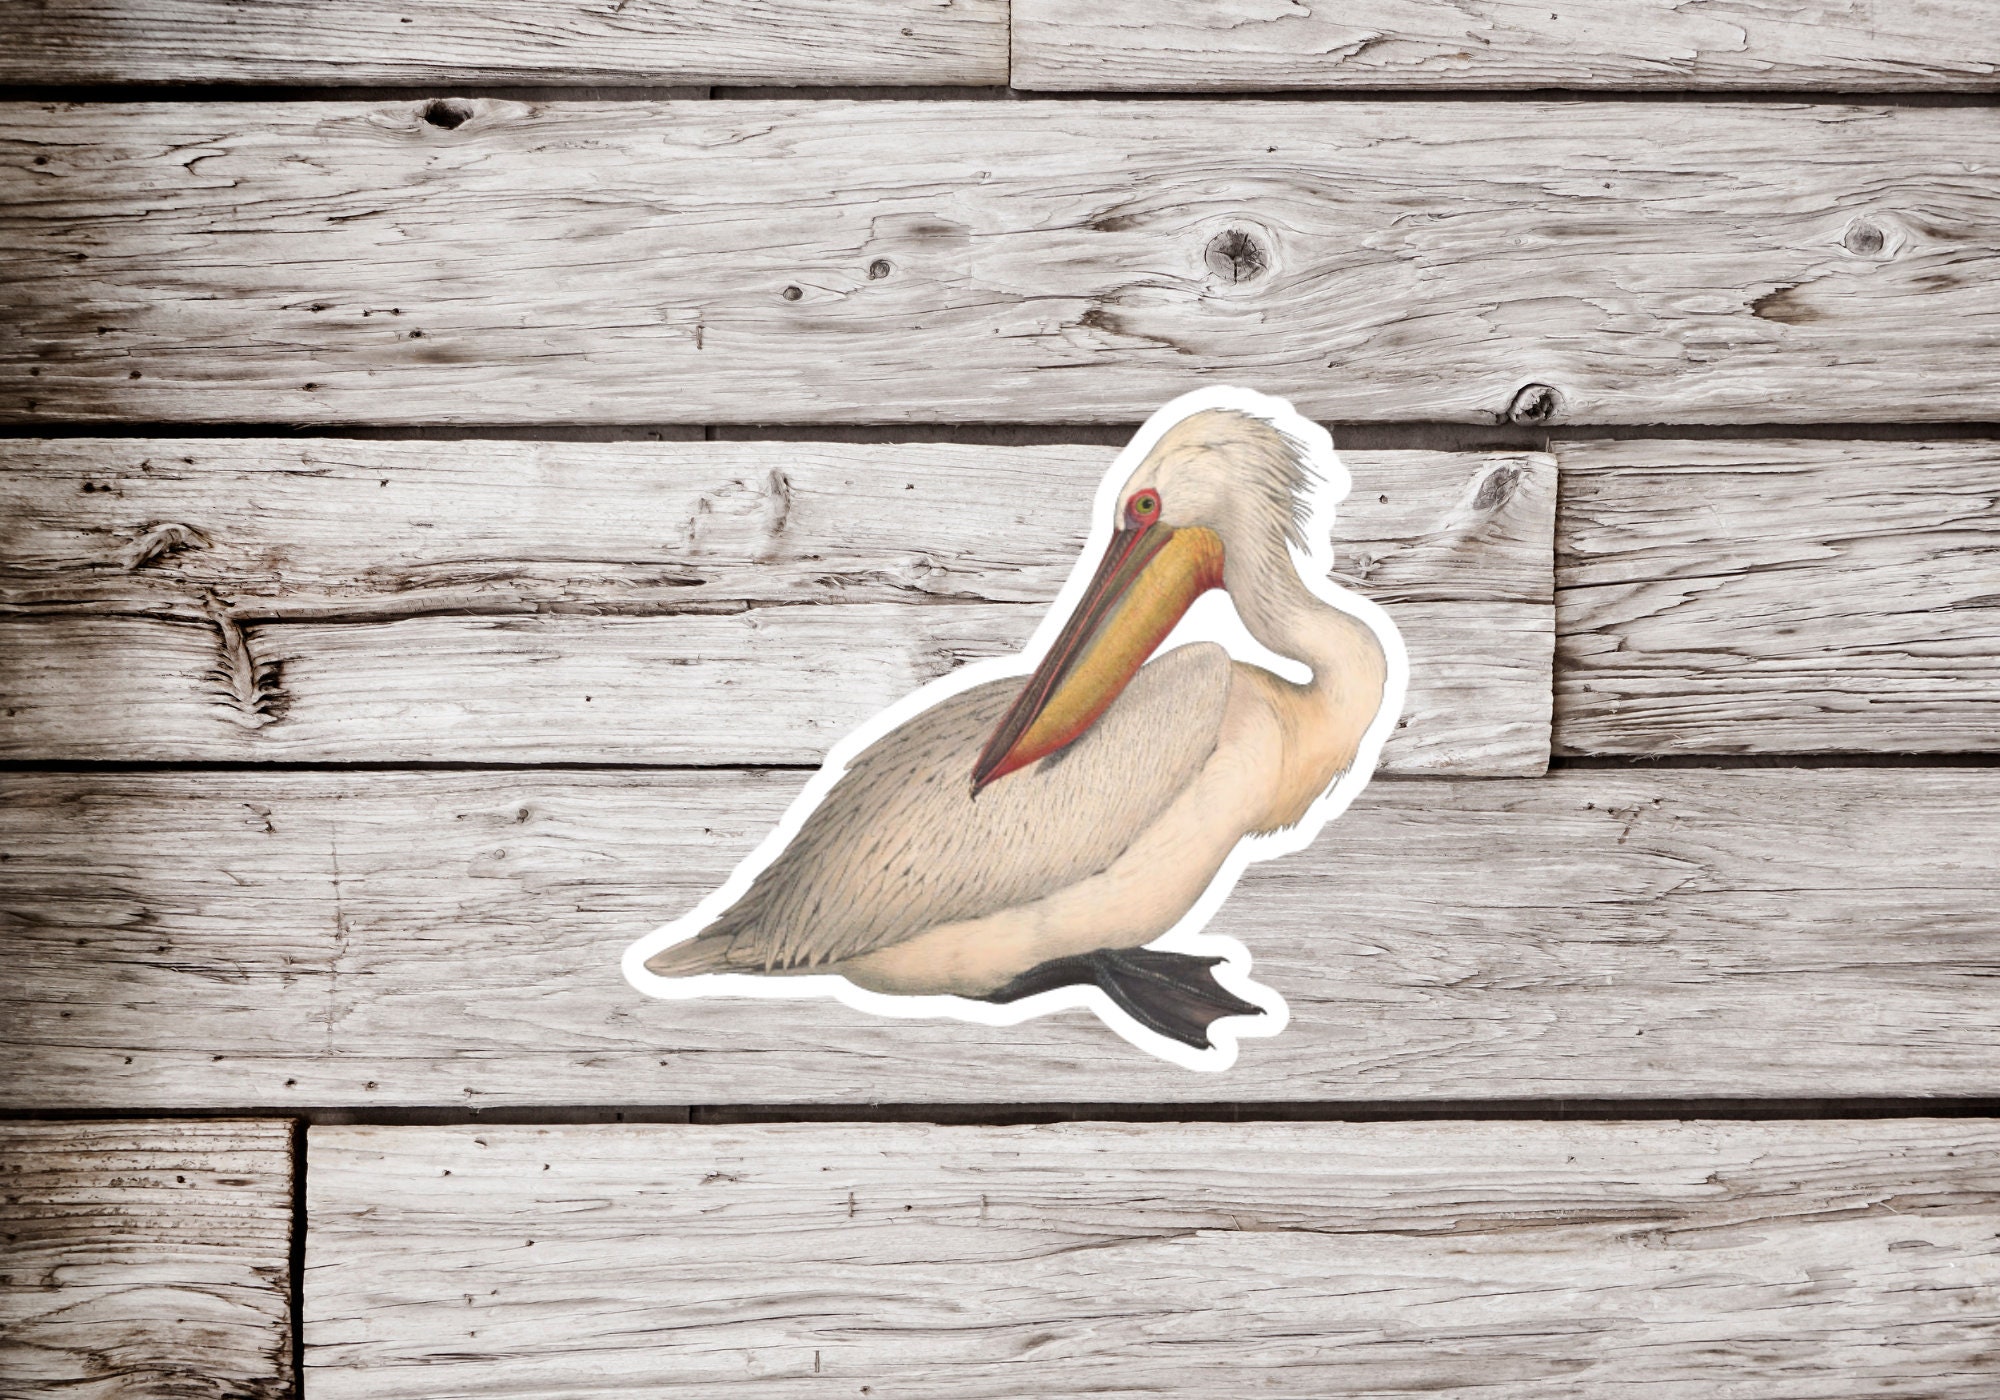 Birder on Board Car Magnet — Pelican Harbor Seabird Station